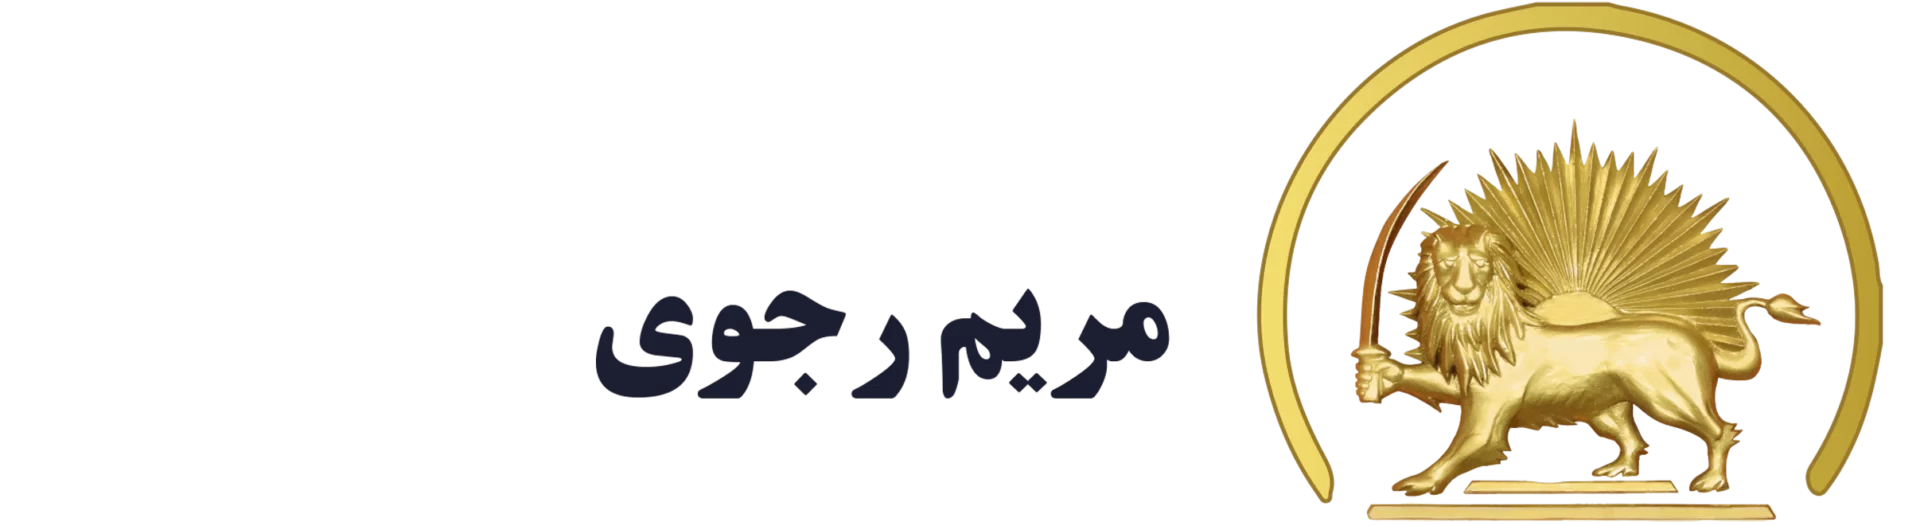 Logo Maryam Radjavi